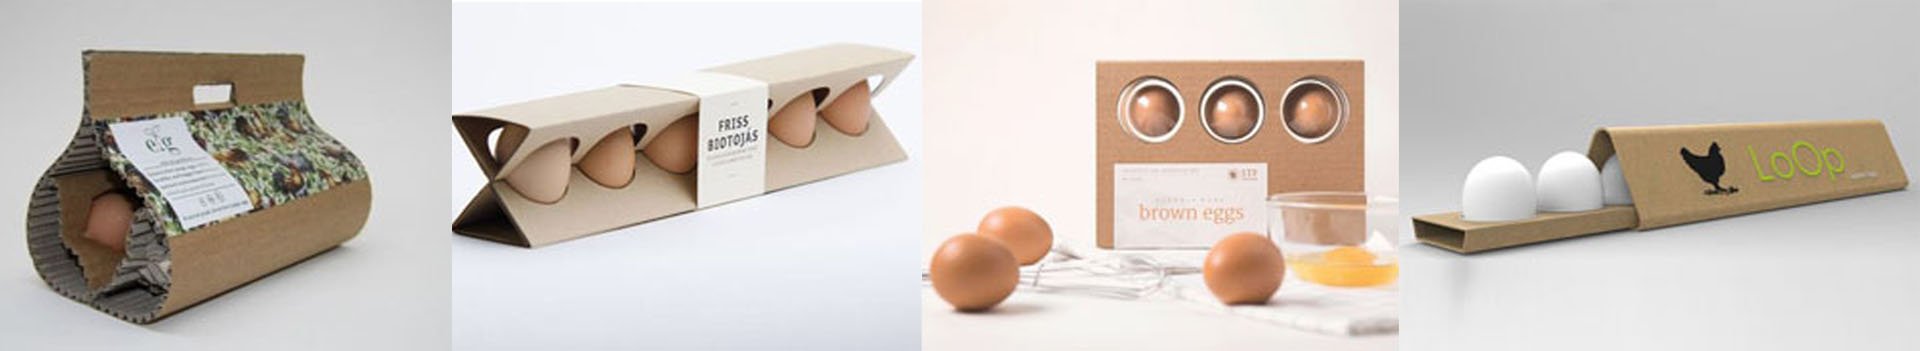 Уникальные упаковки куриных яиц